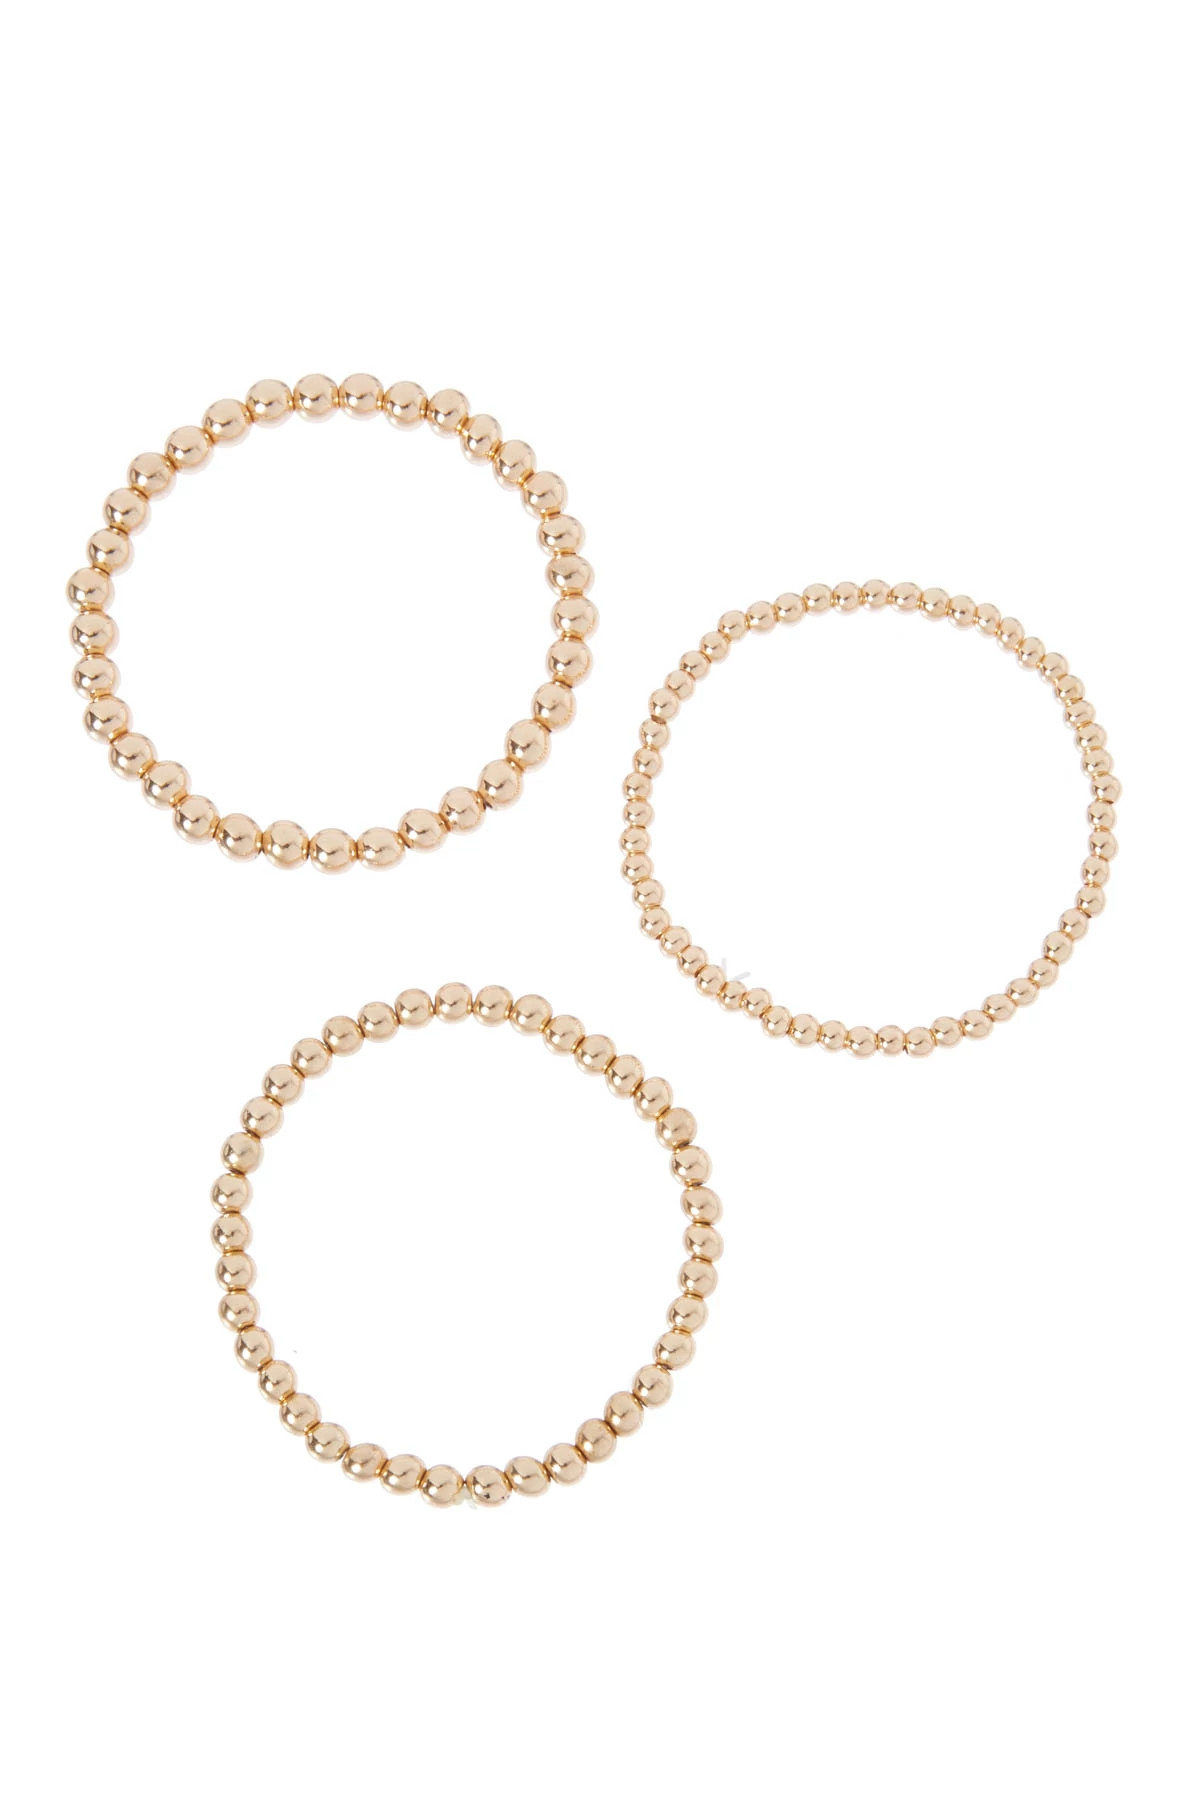 GOLD Gold Bracelets (Set of 3) image number 1